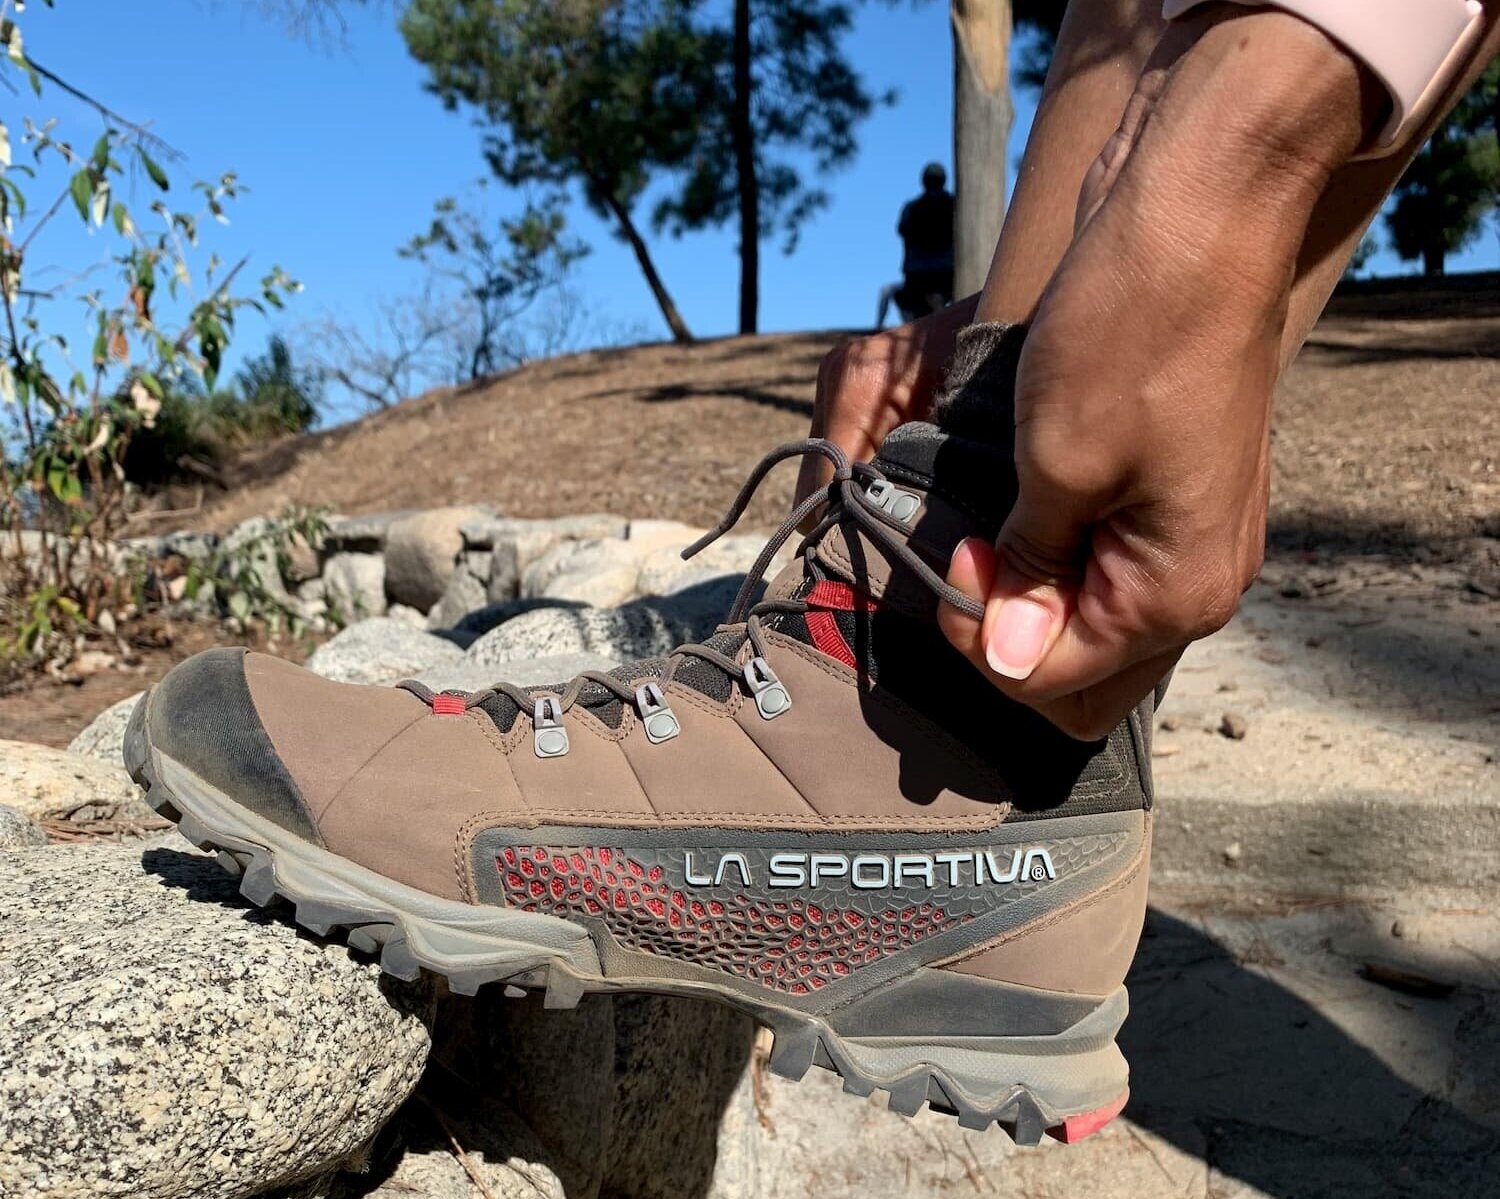 lightweight summer hiking boots